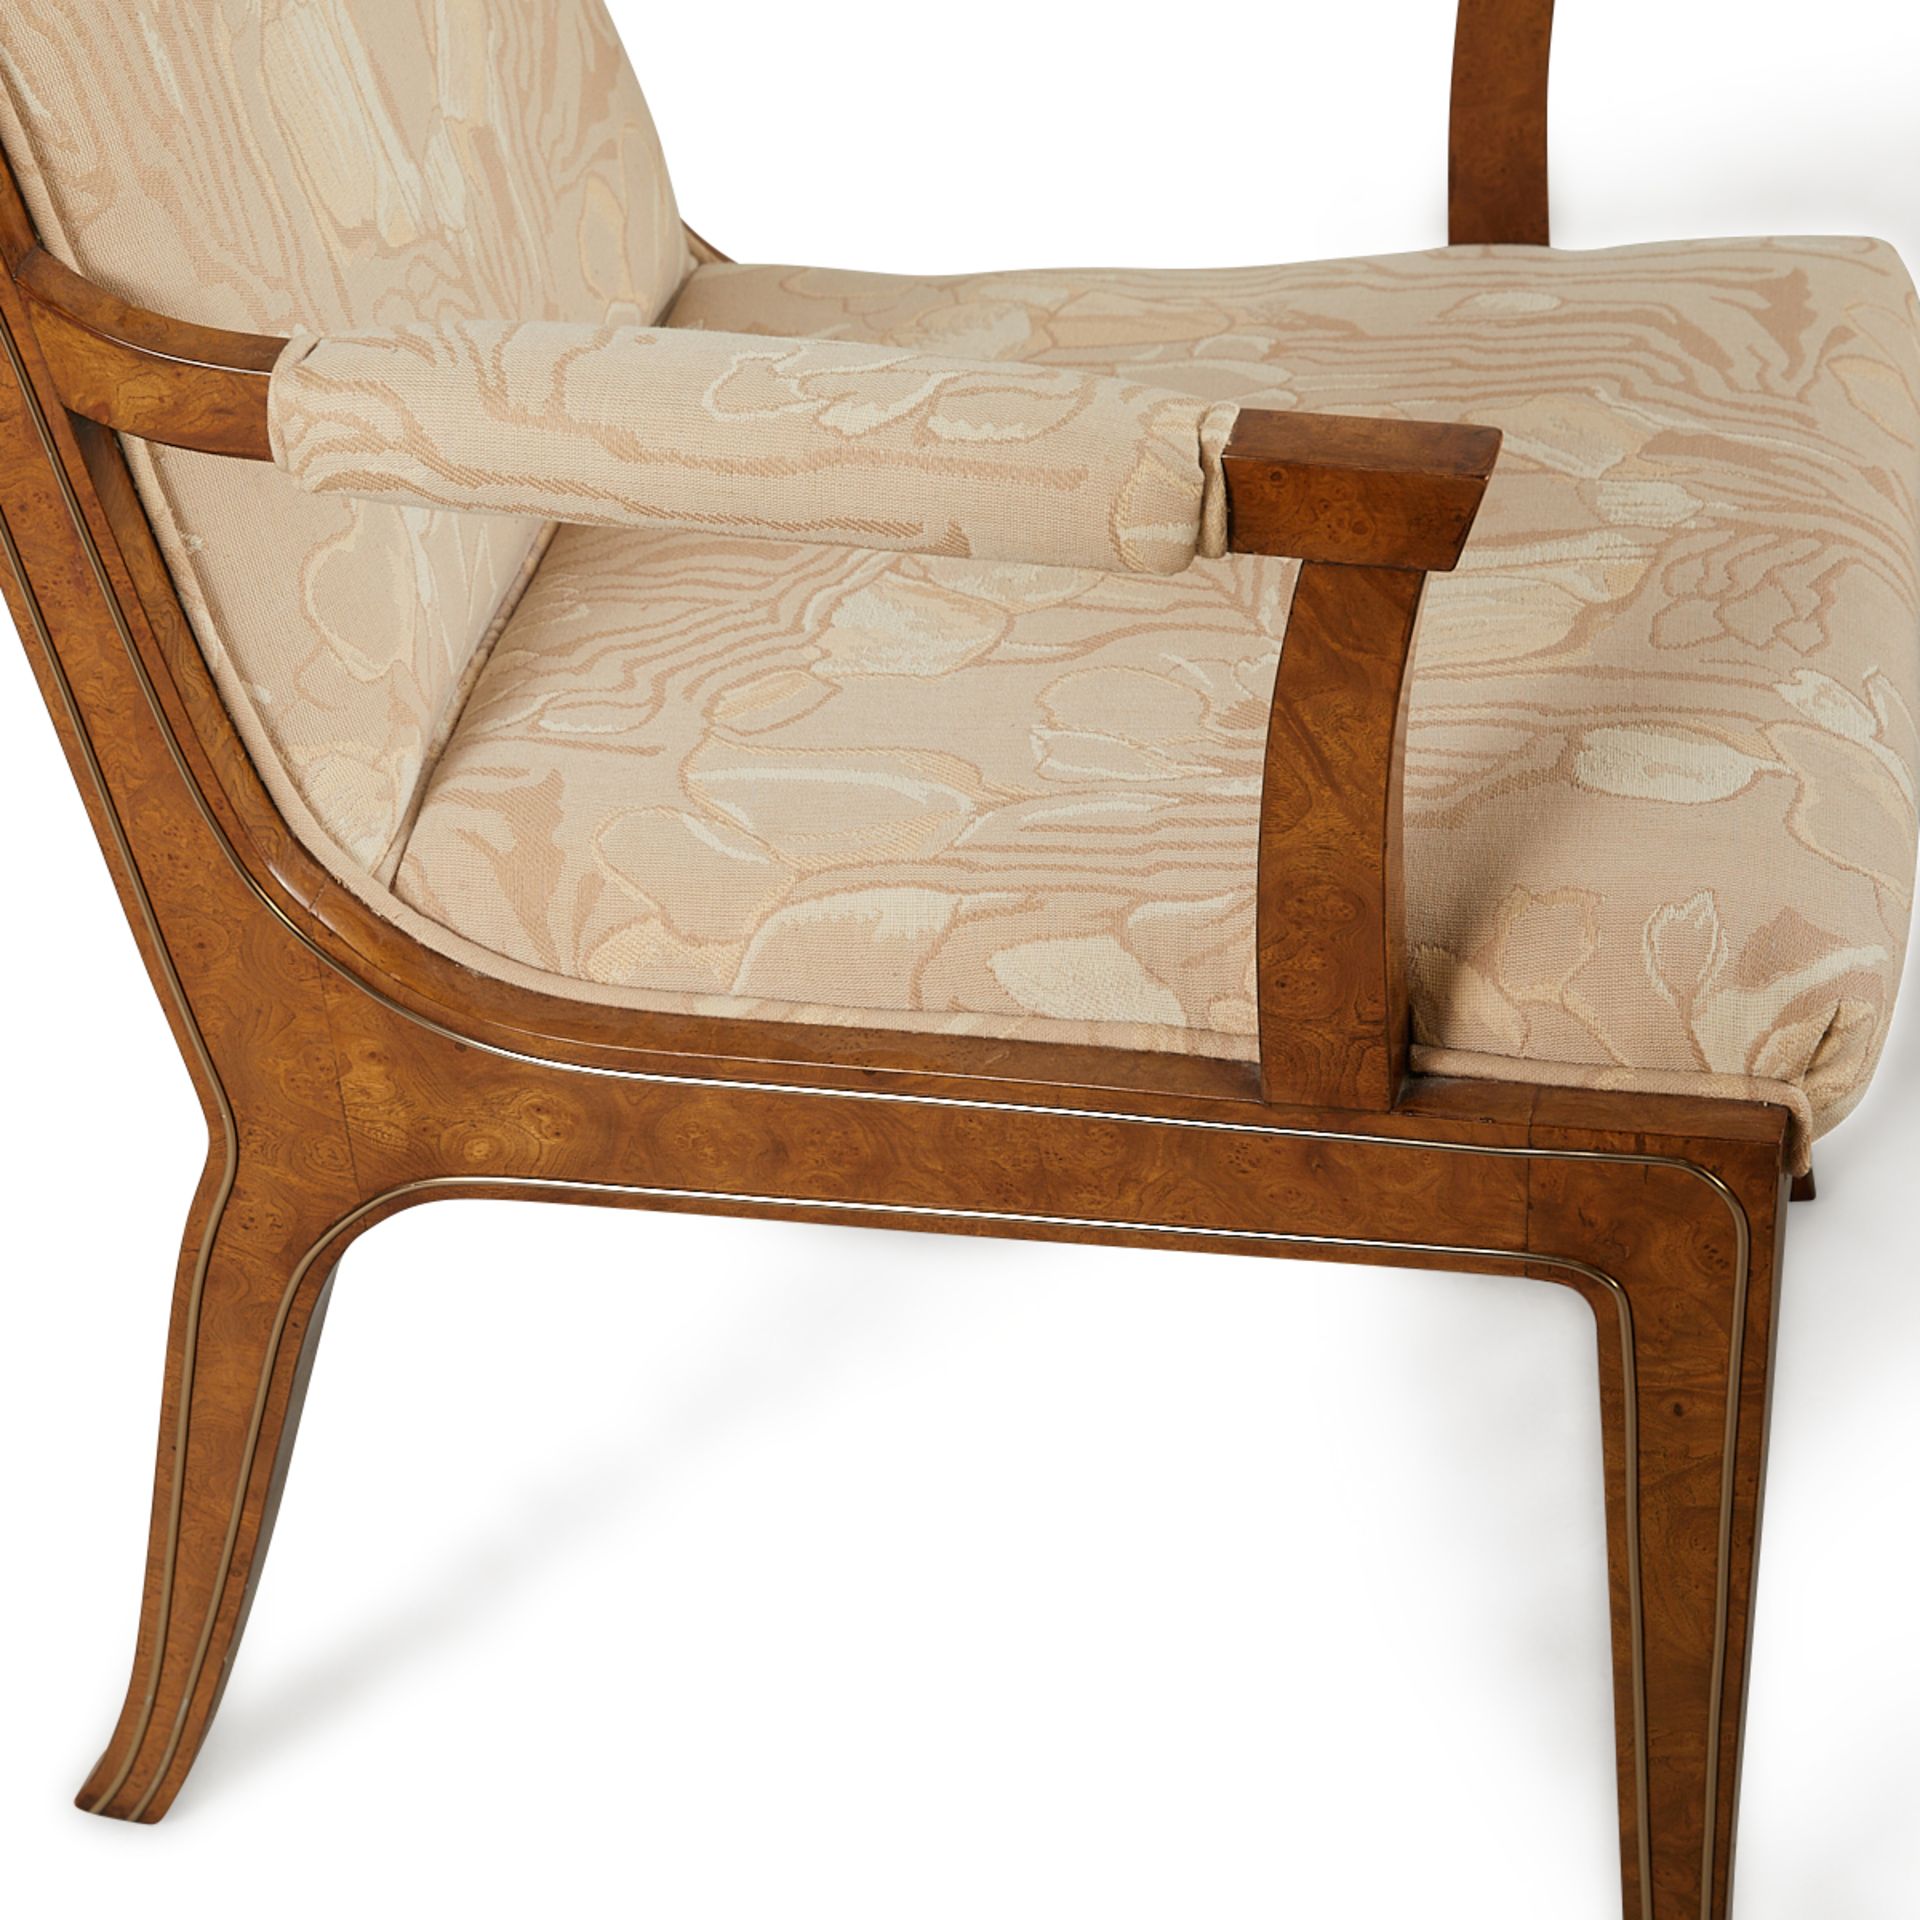 Set 8 Bernhard Rohne MasterCraft Burled Chairs - Image 10 of 24